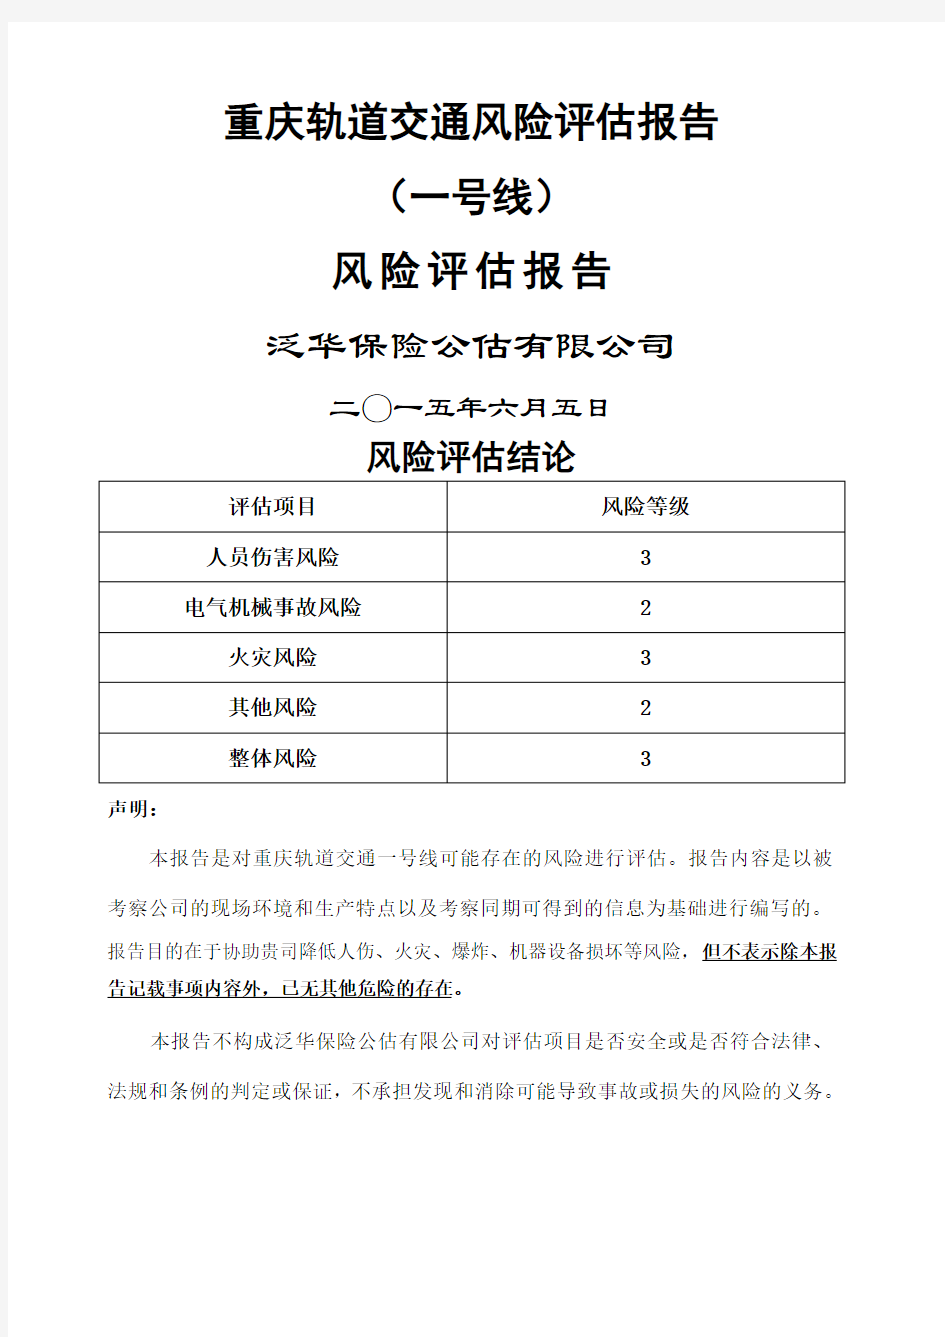 重庆轨道交通一号线风险评估报告